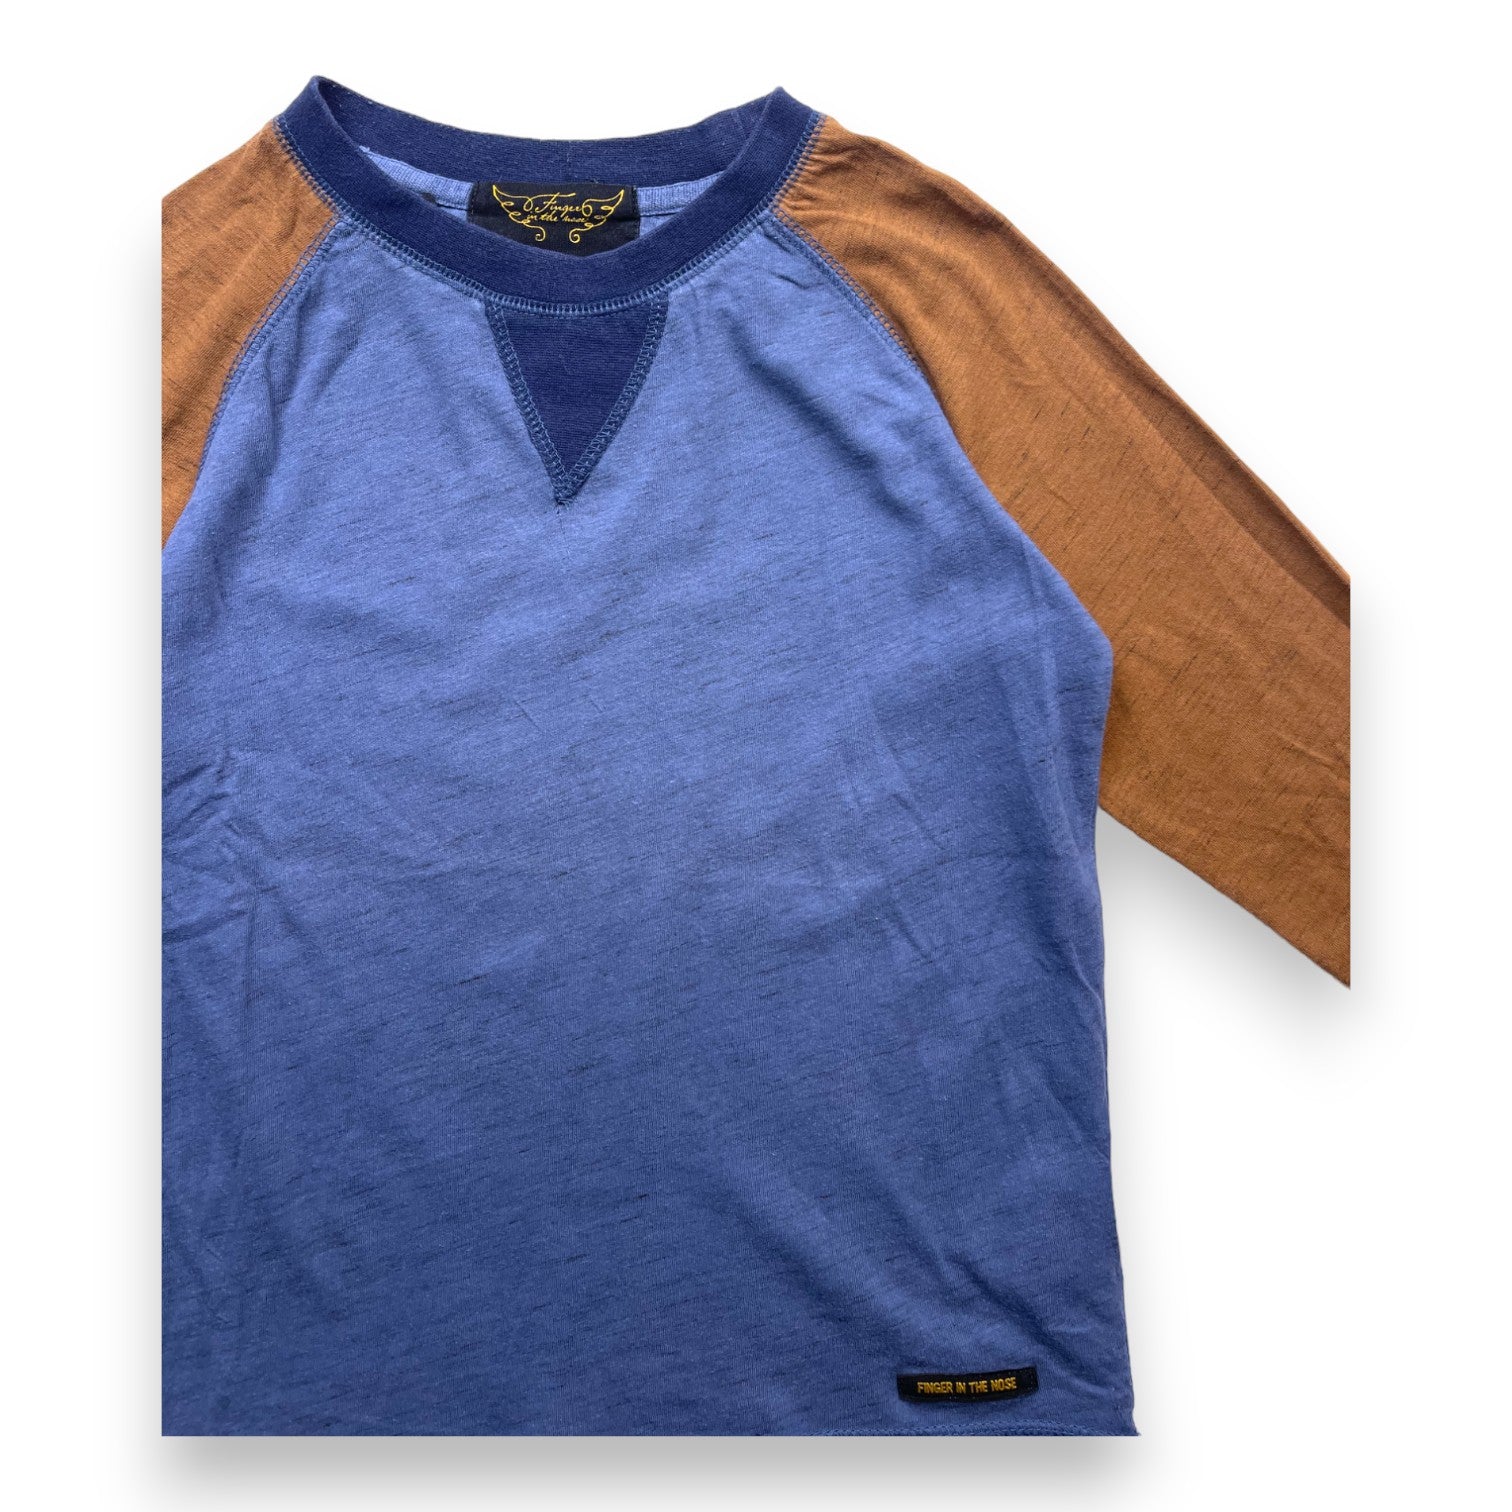 FINGER IN THE NOSE - T shirt manches longues bleu et marron - 6/7 ans